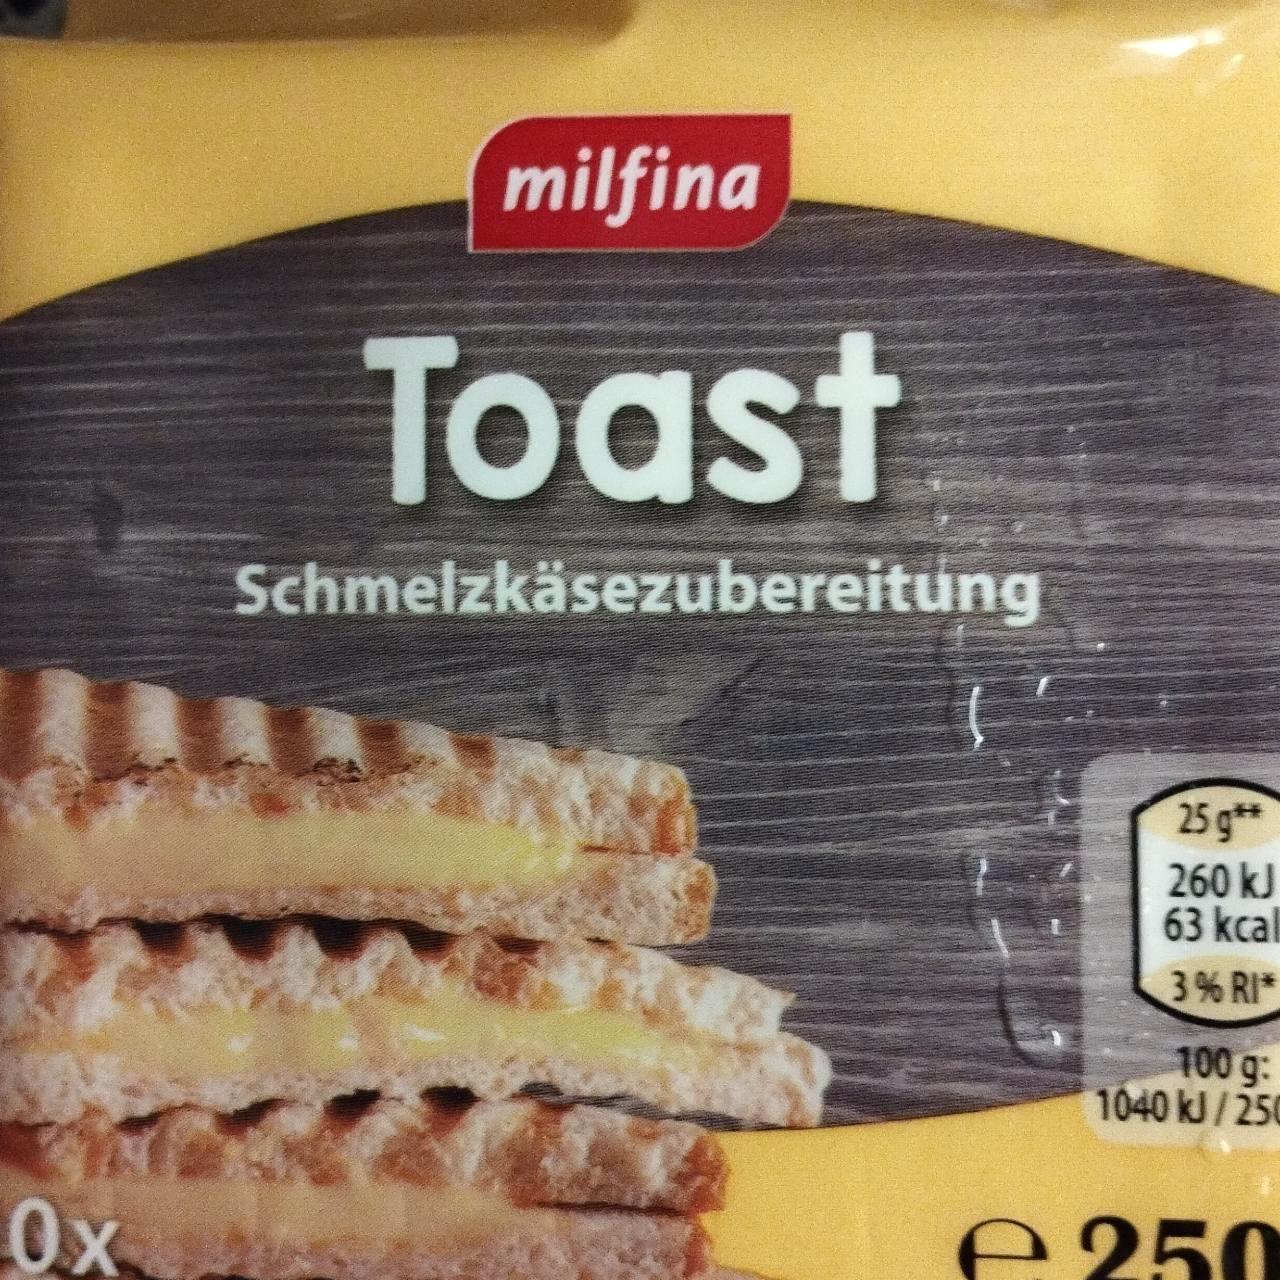 Képek - Toast sajt Schmelzkäsezubereitung Milfina